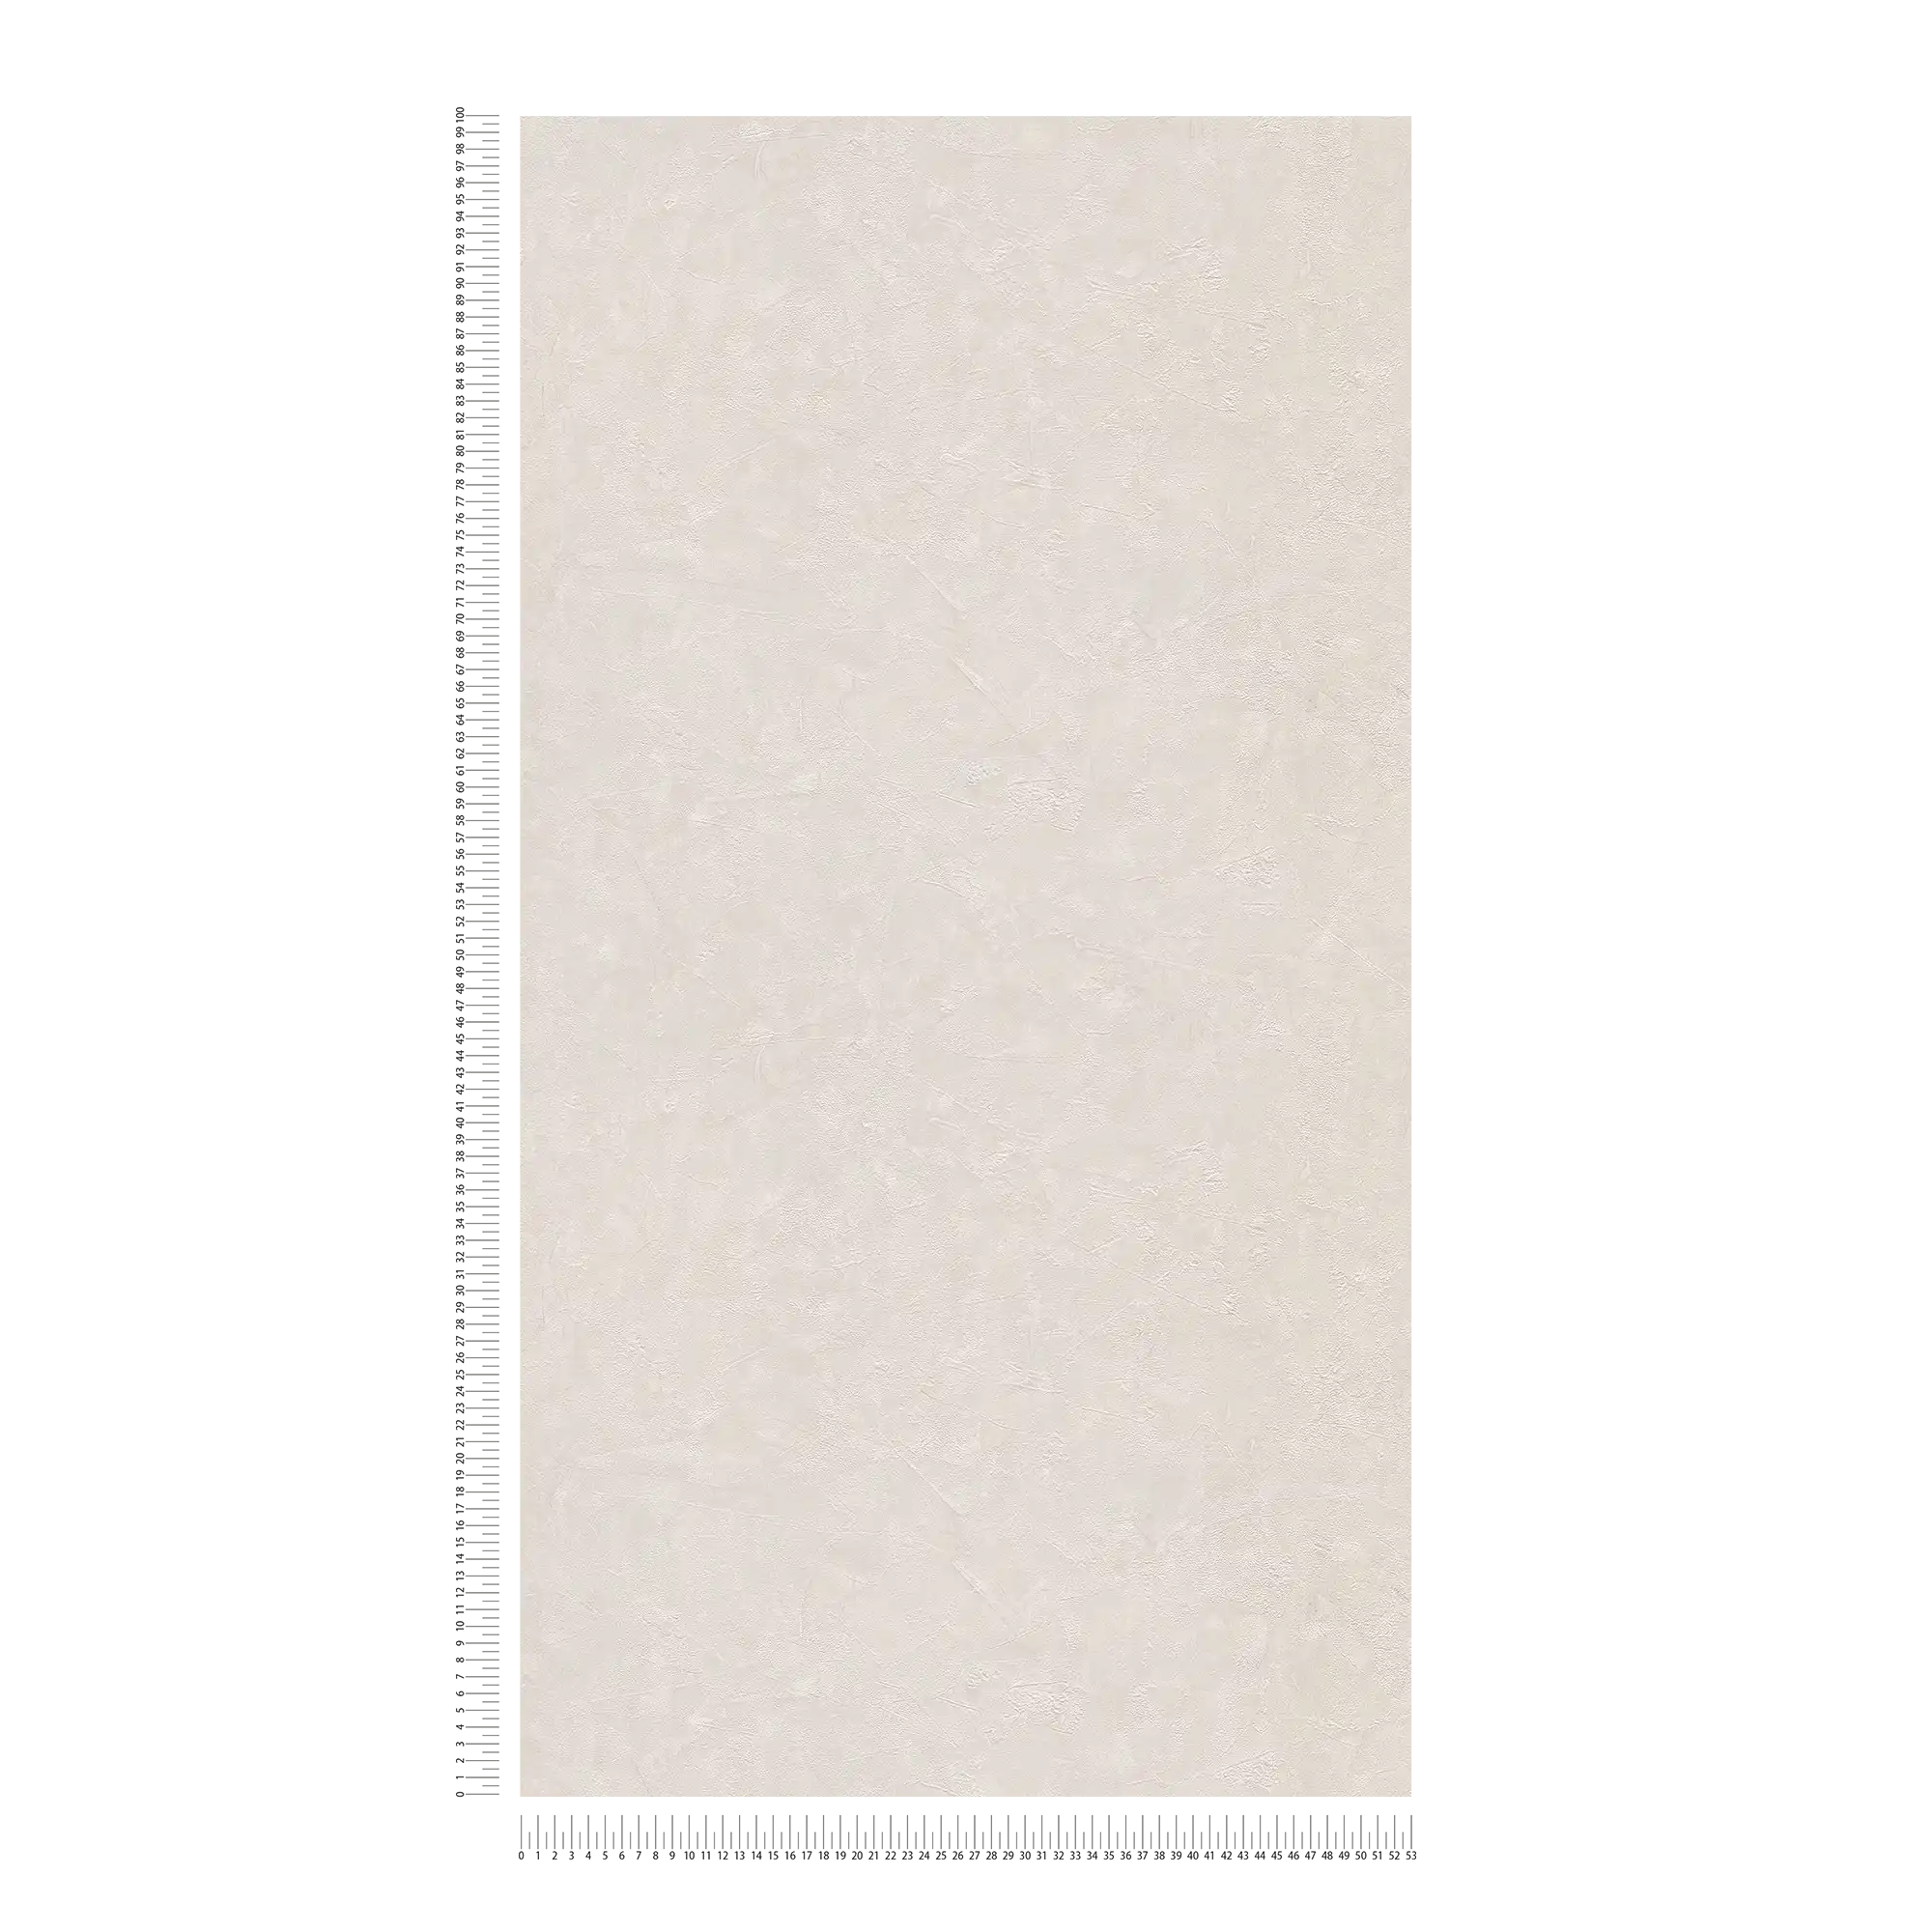             Papier peint plâtre uni & motifs structurés - crème, gris
        